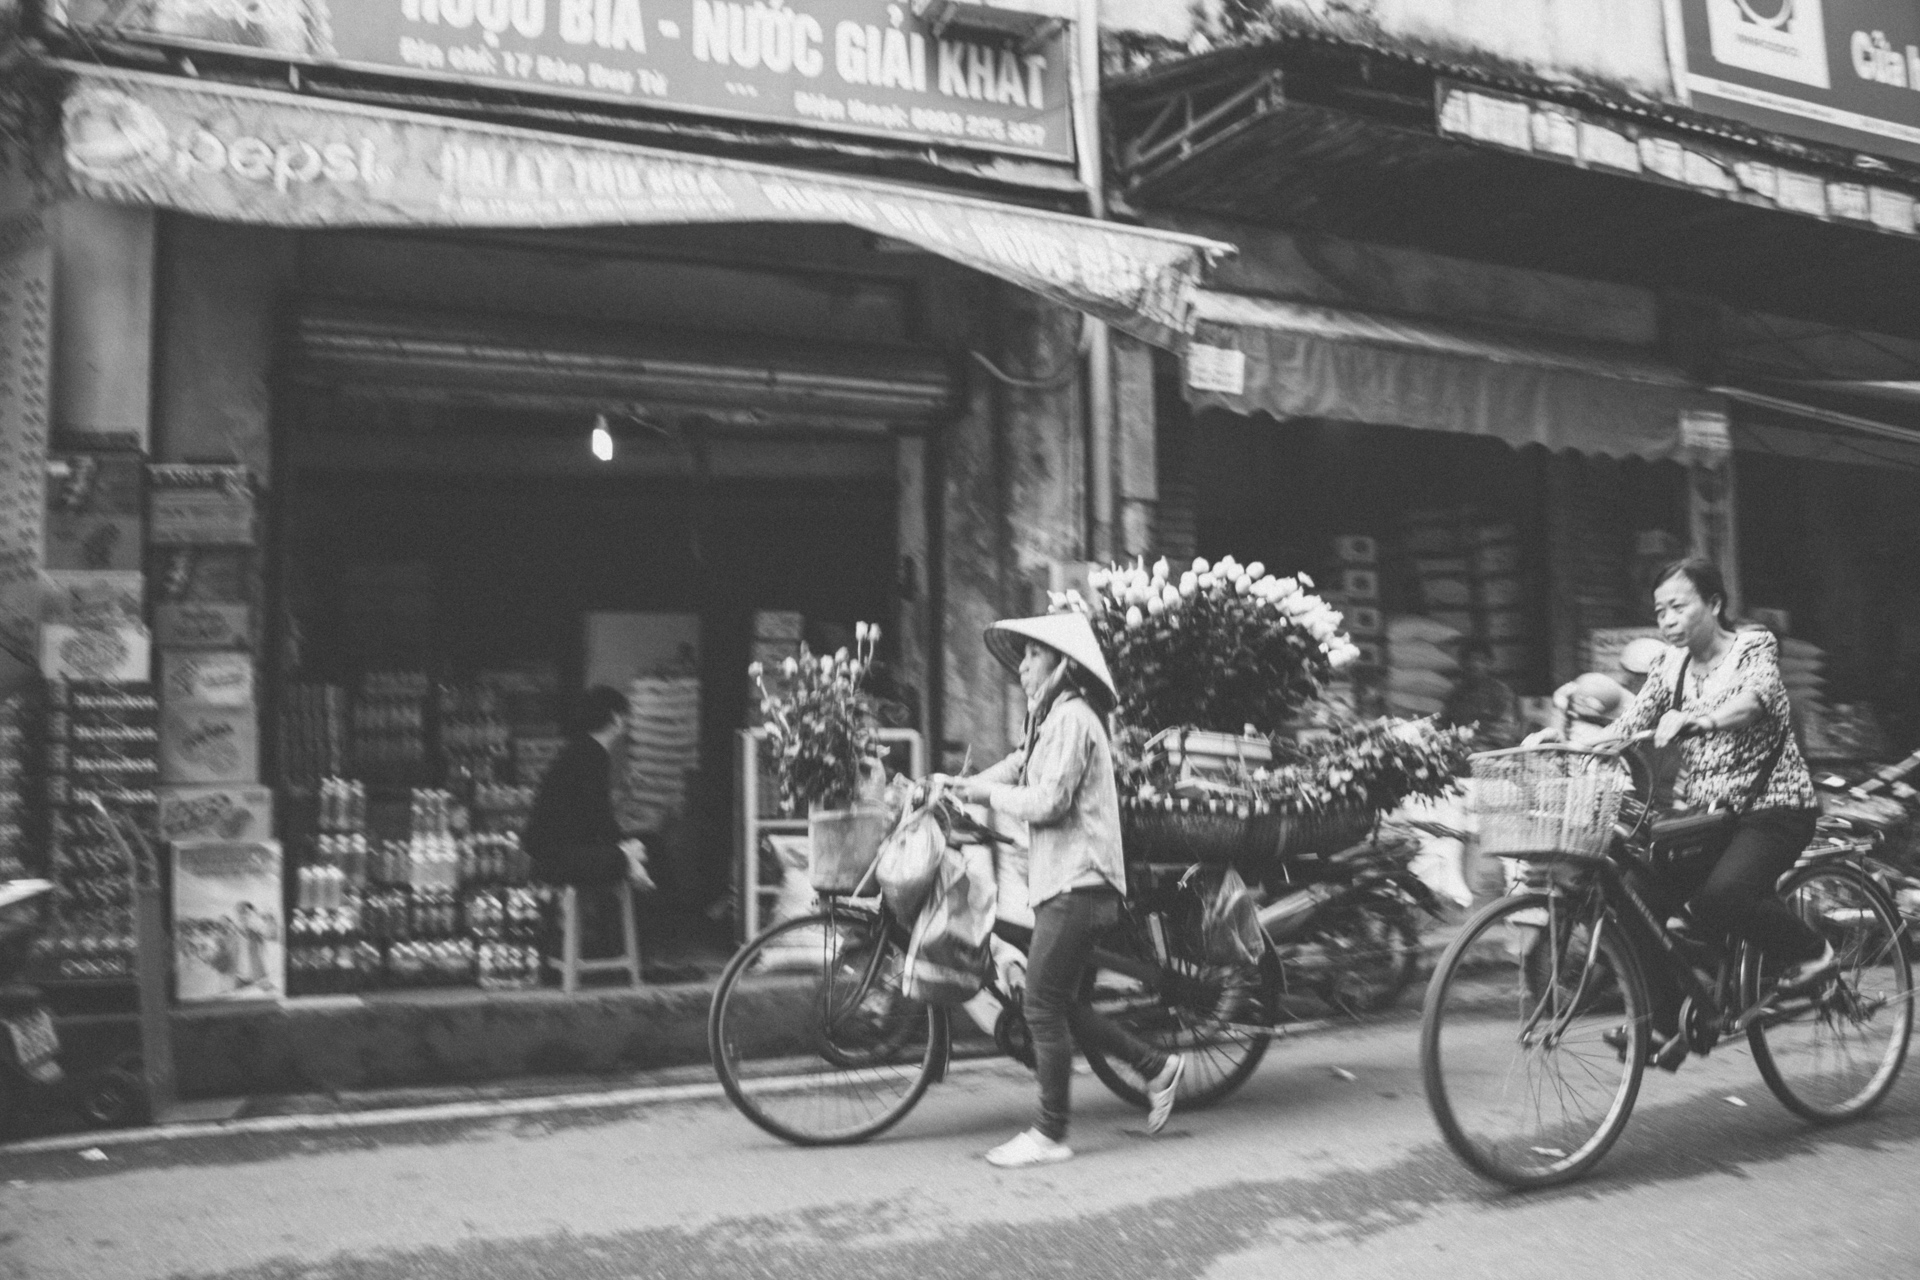 Street Vendor in Hanoi